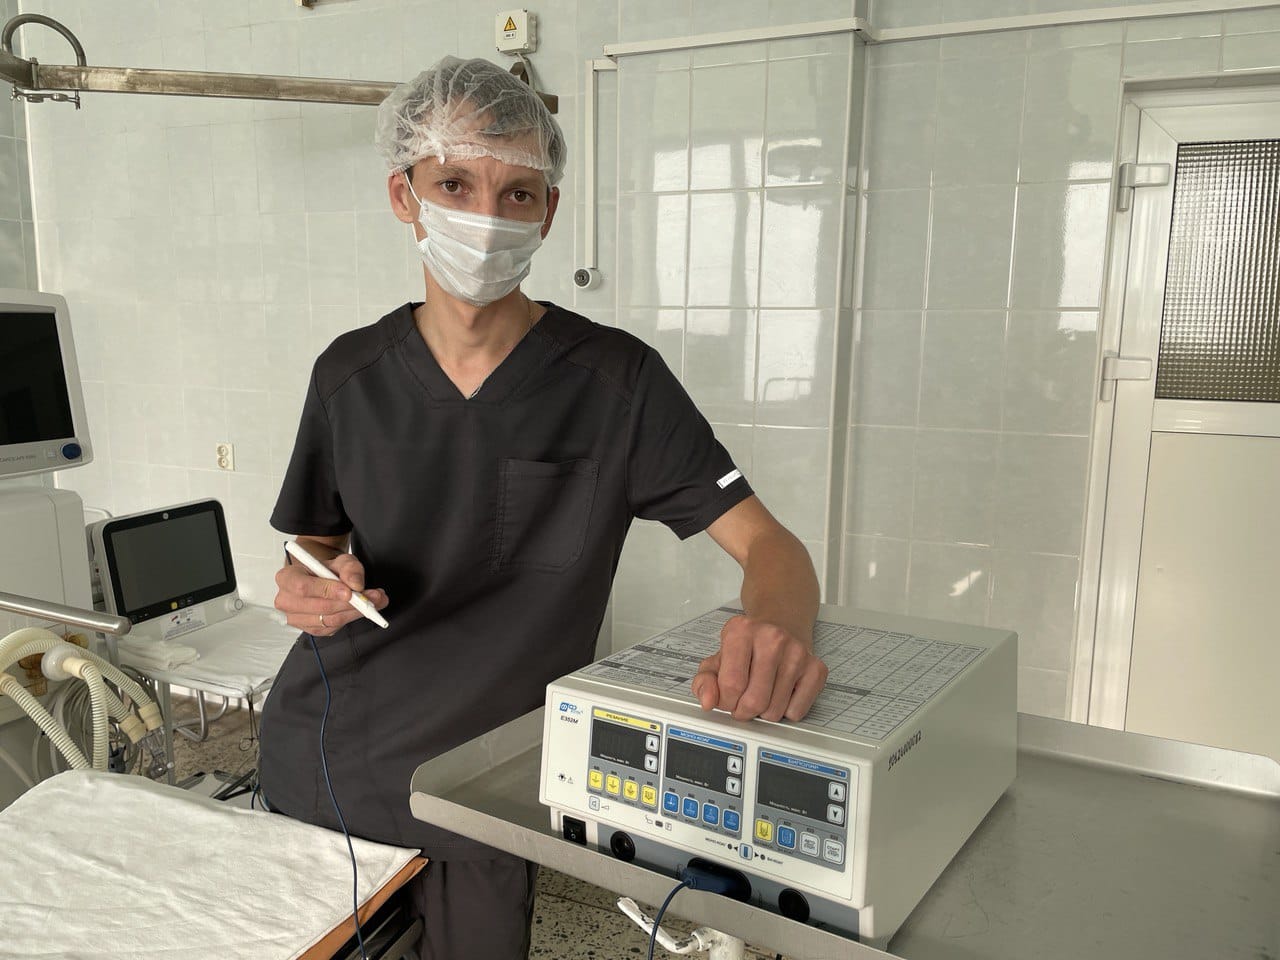 Около тысячи операций в год проводят с помощью нового электрокоагулятора в Черняховской больнице